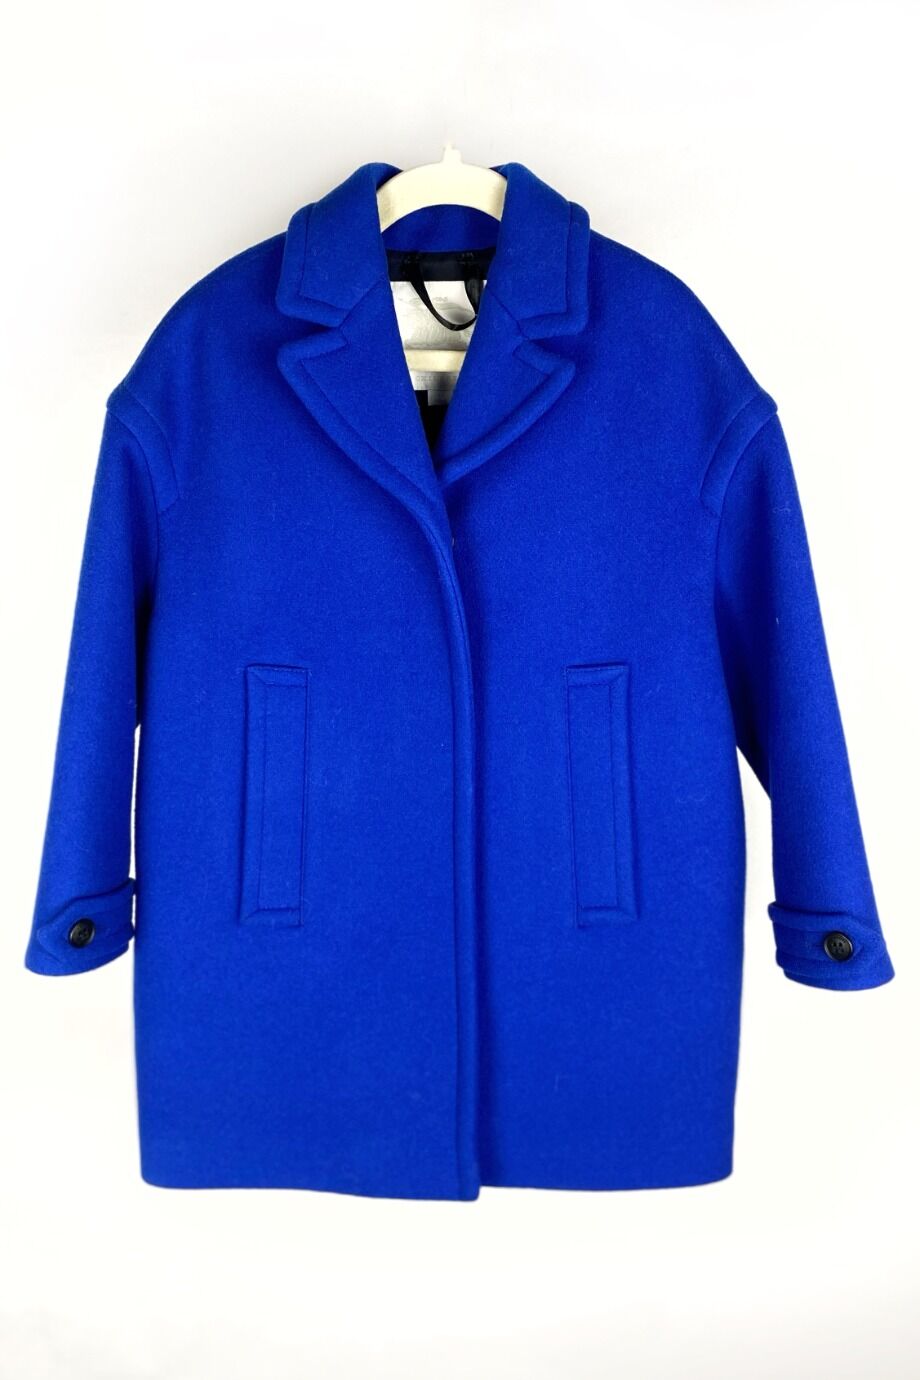 image 1 Детское пальто синего цвета на кнопках